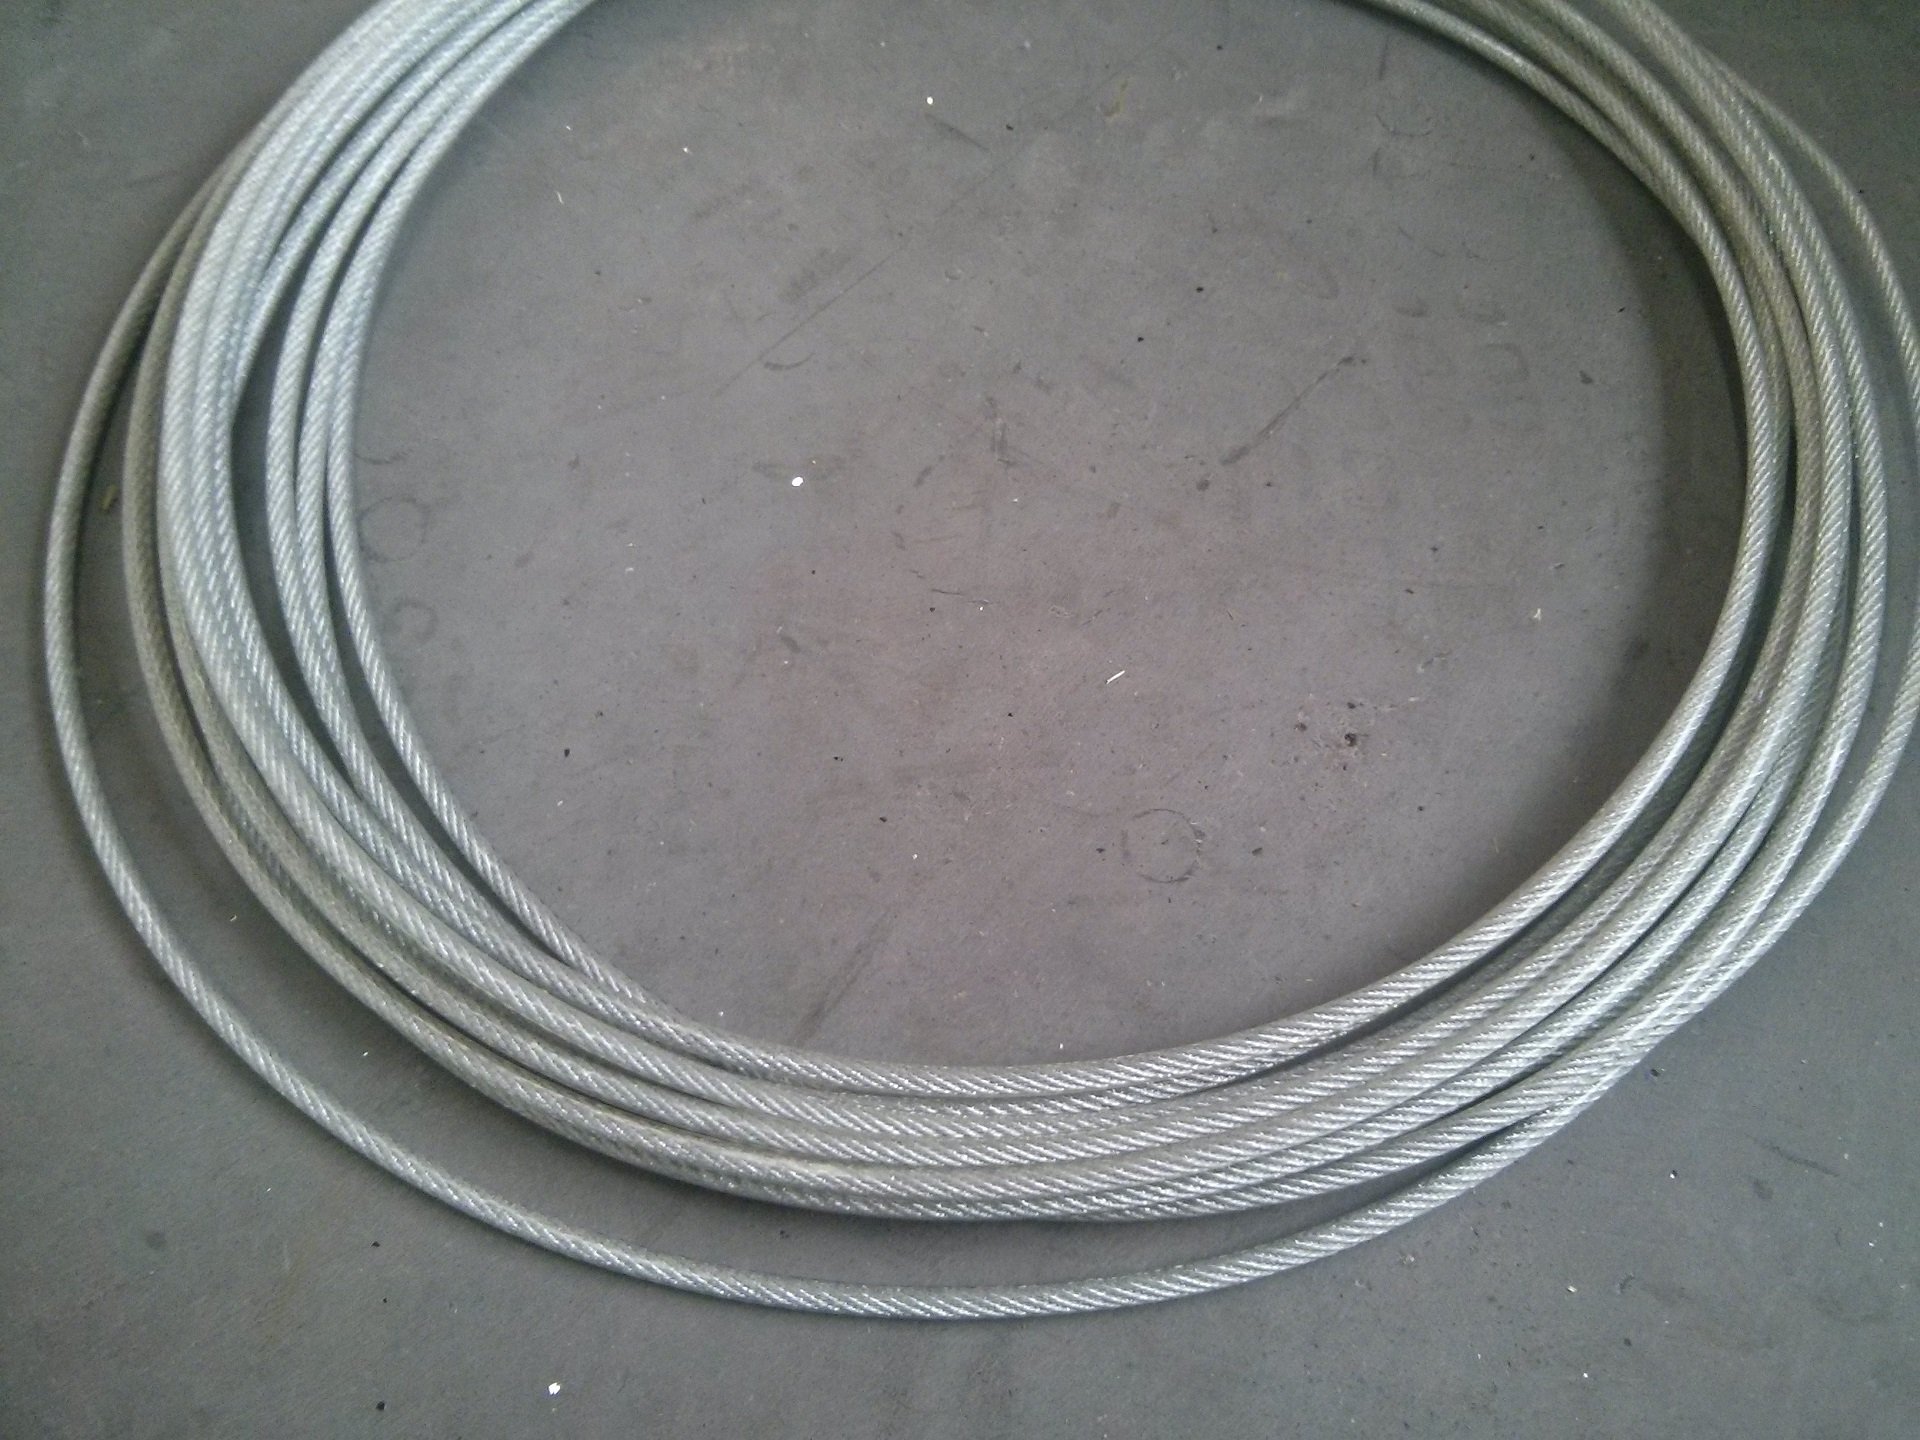 Câble acier Gainé PVC rouge - Ø 3 x 5 mm - Couronne 25 mètres : Câbles  Promeca